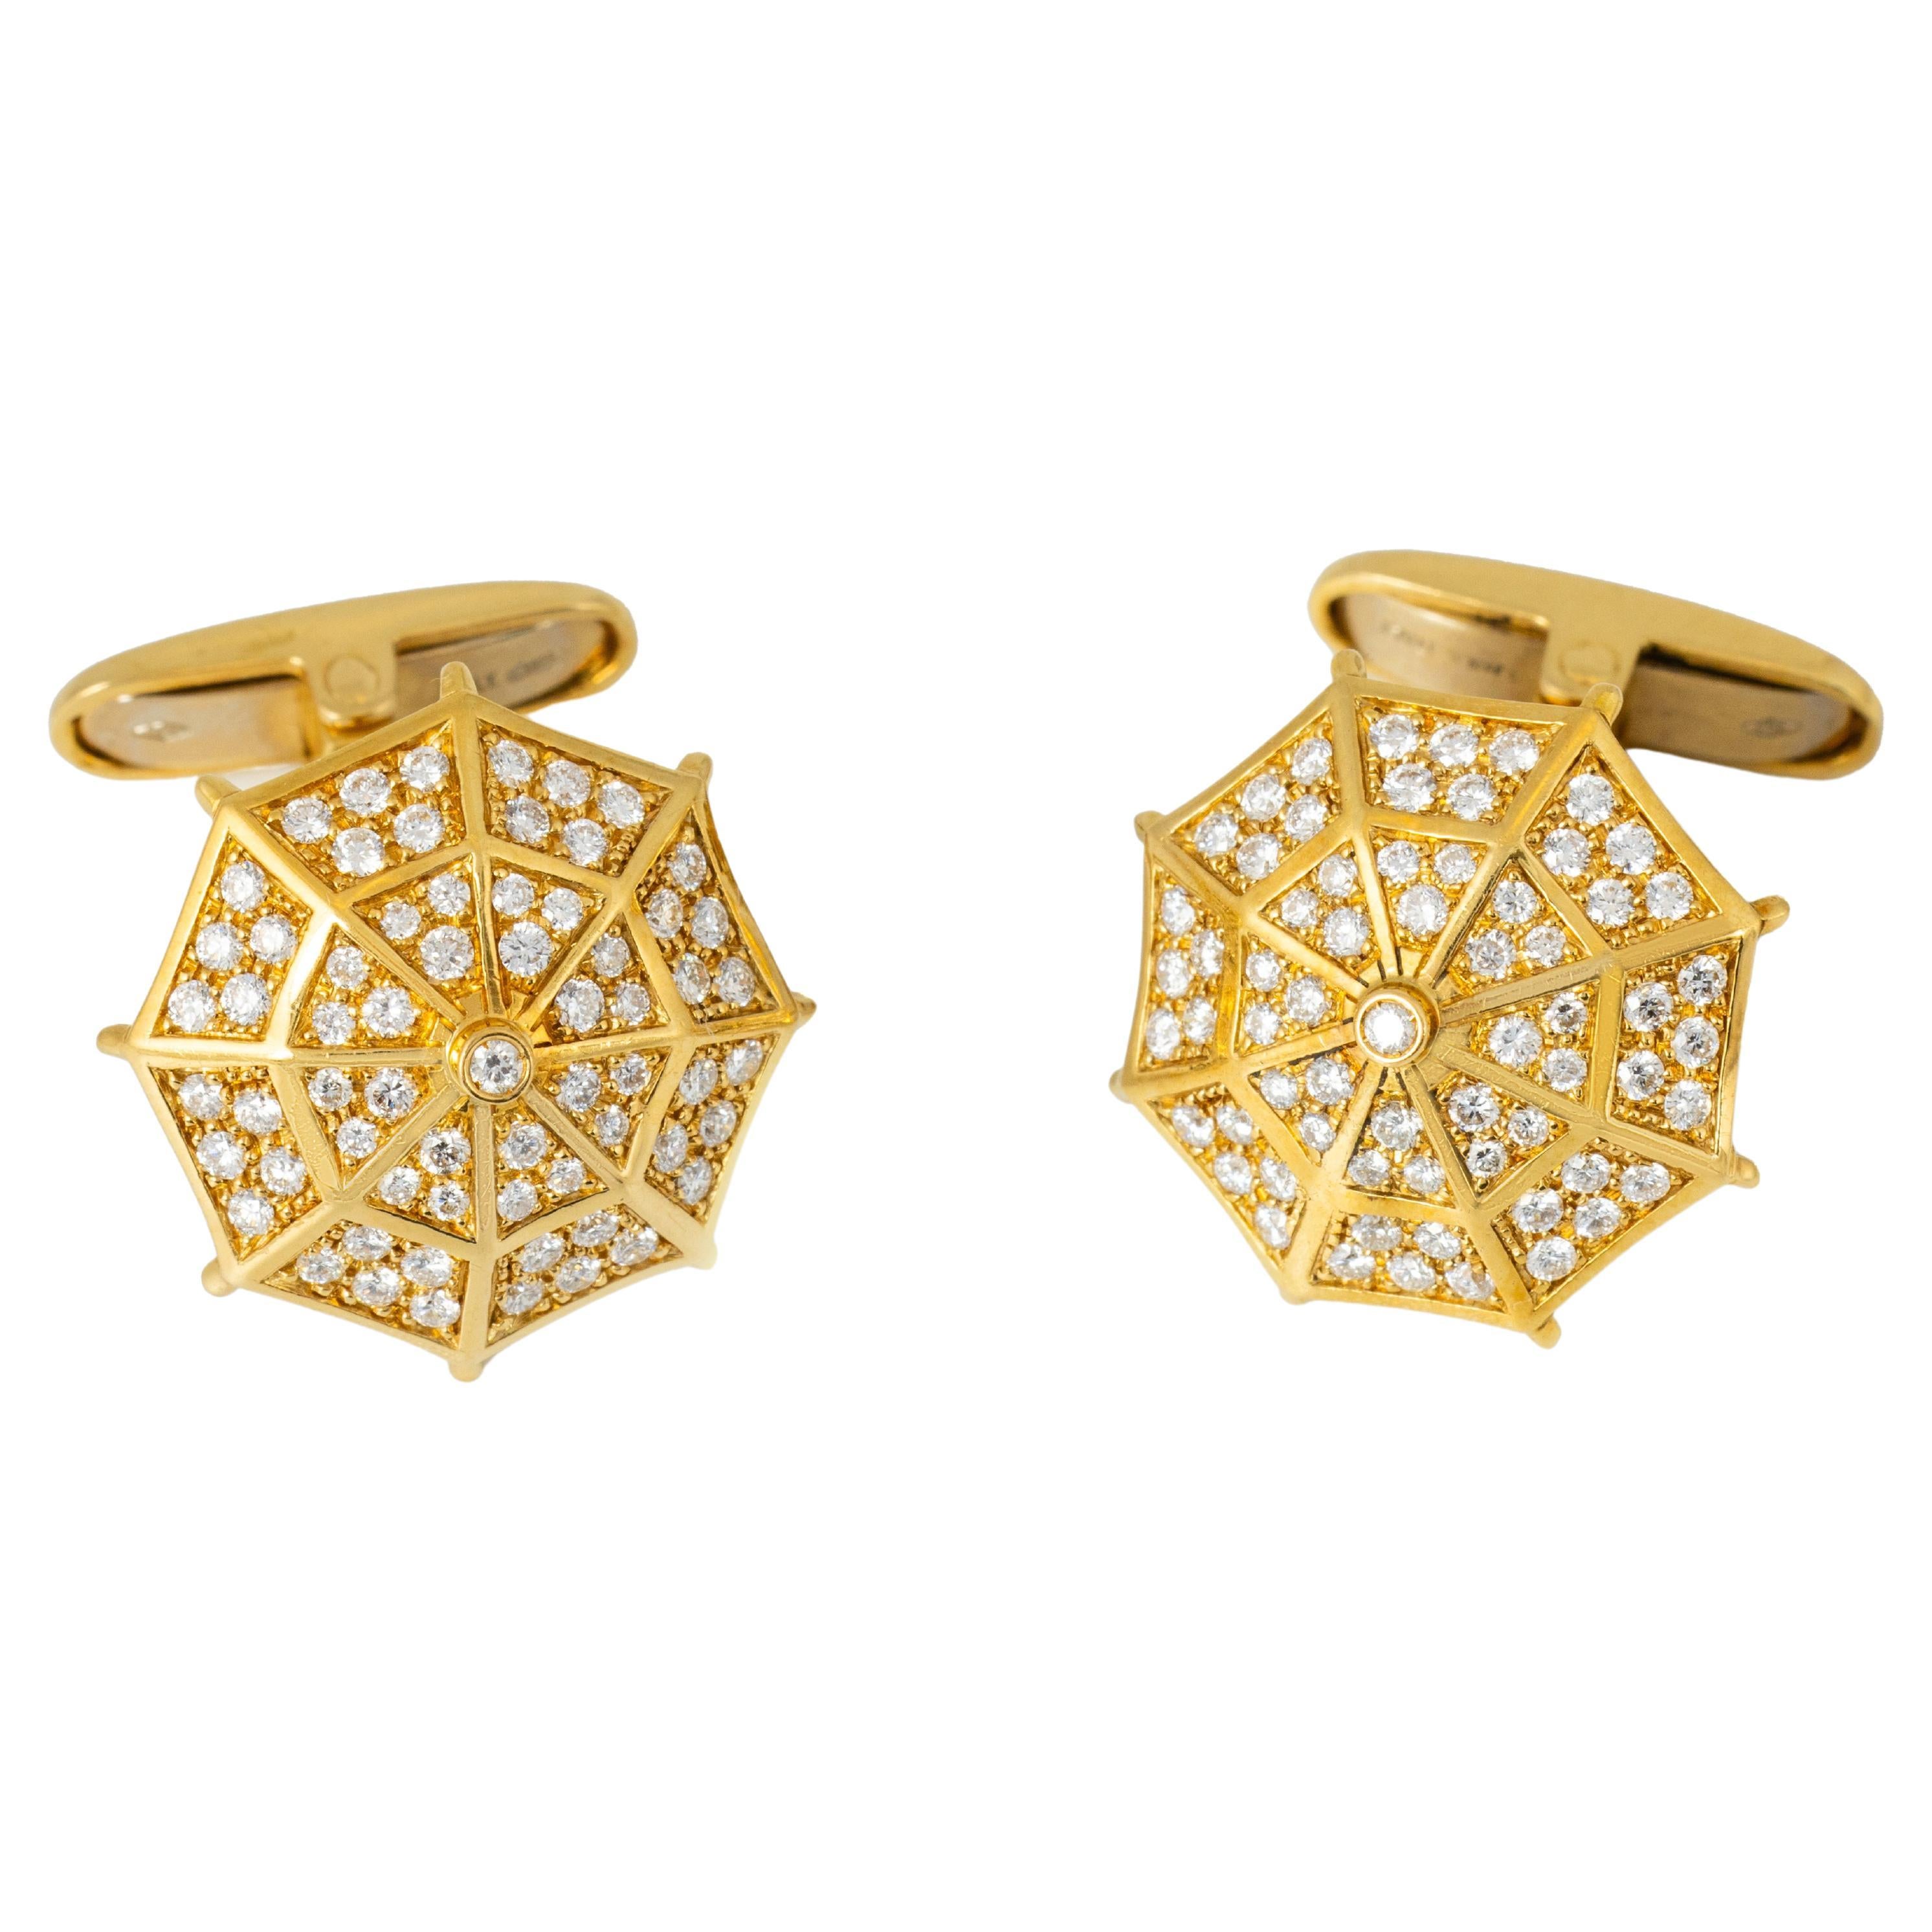 "Costis" Umbrella Collection Manschettenknöpfe YG - Pave' mit 1,19 Karat Diamanten 